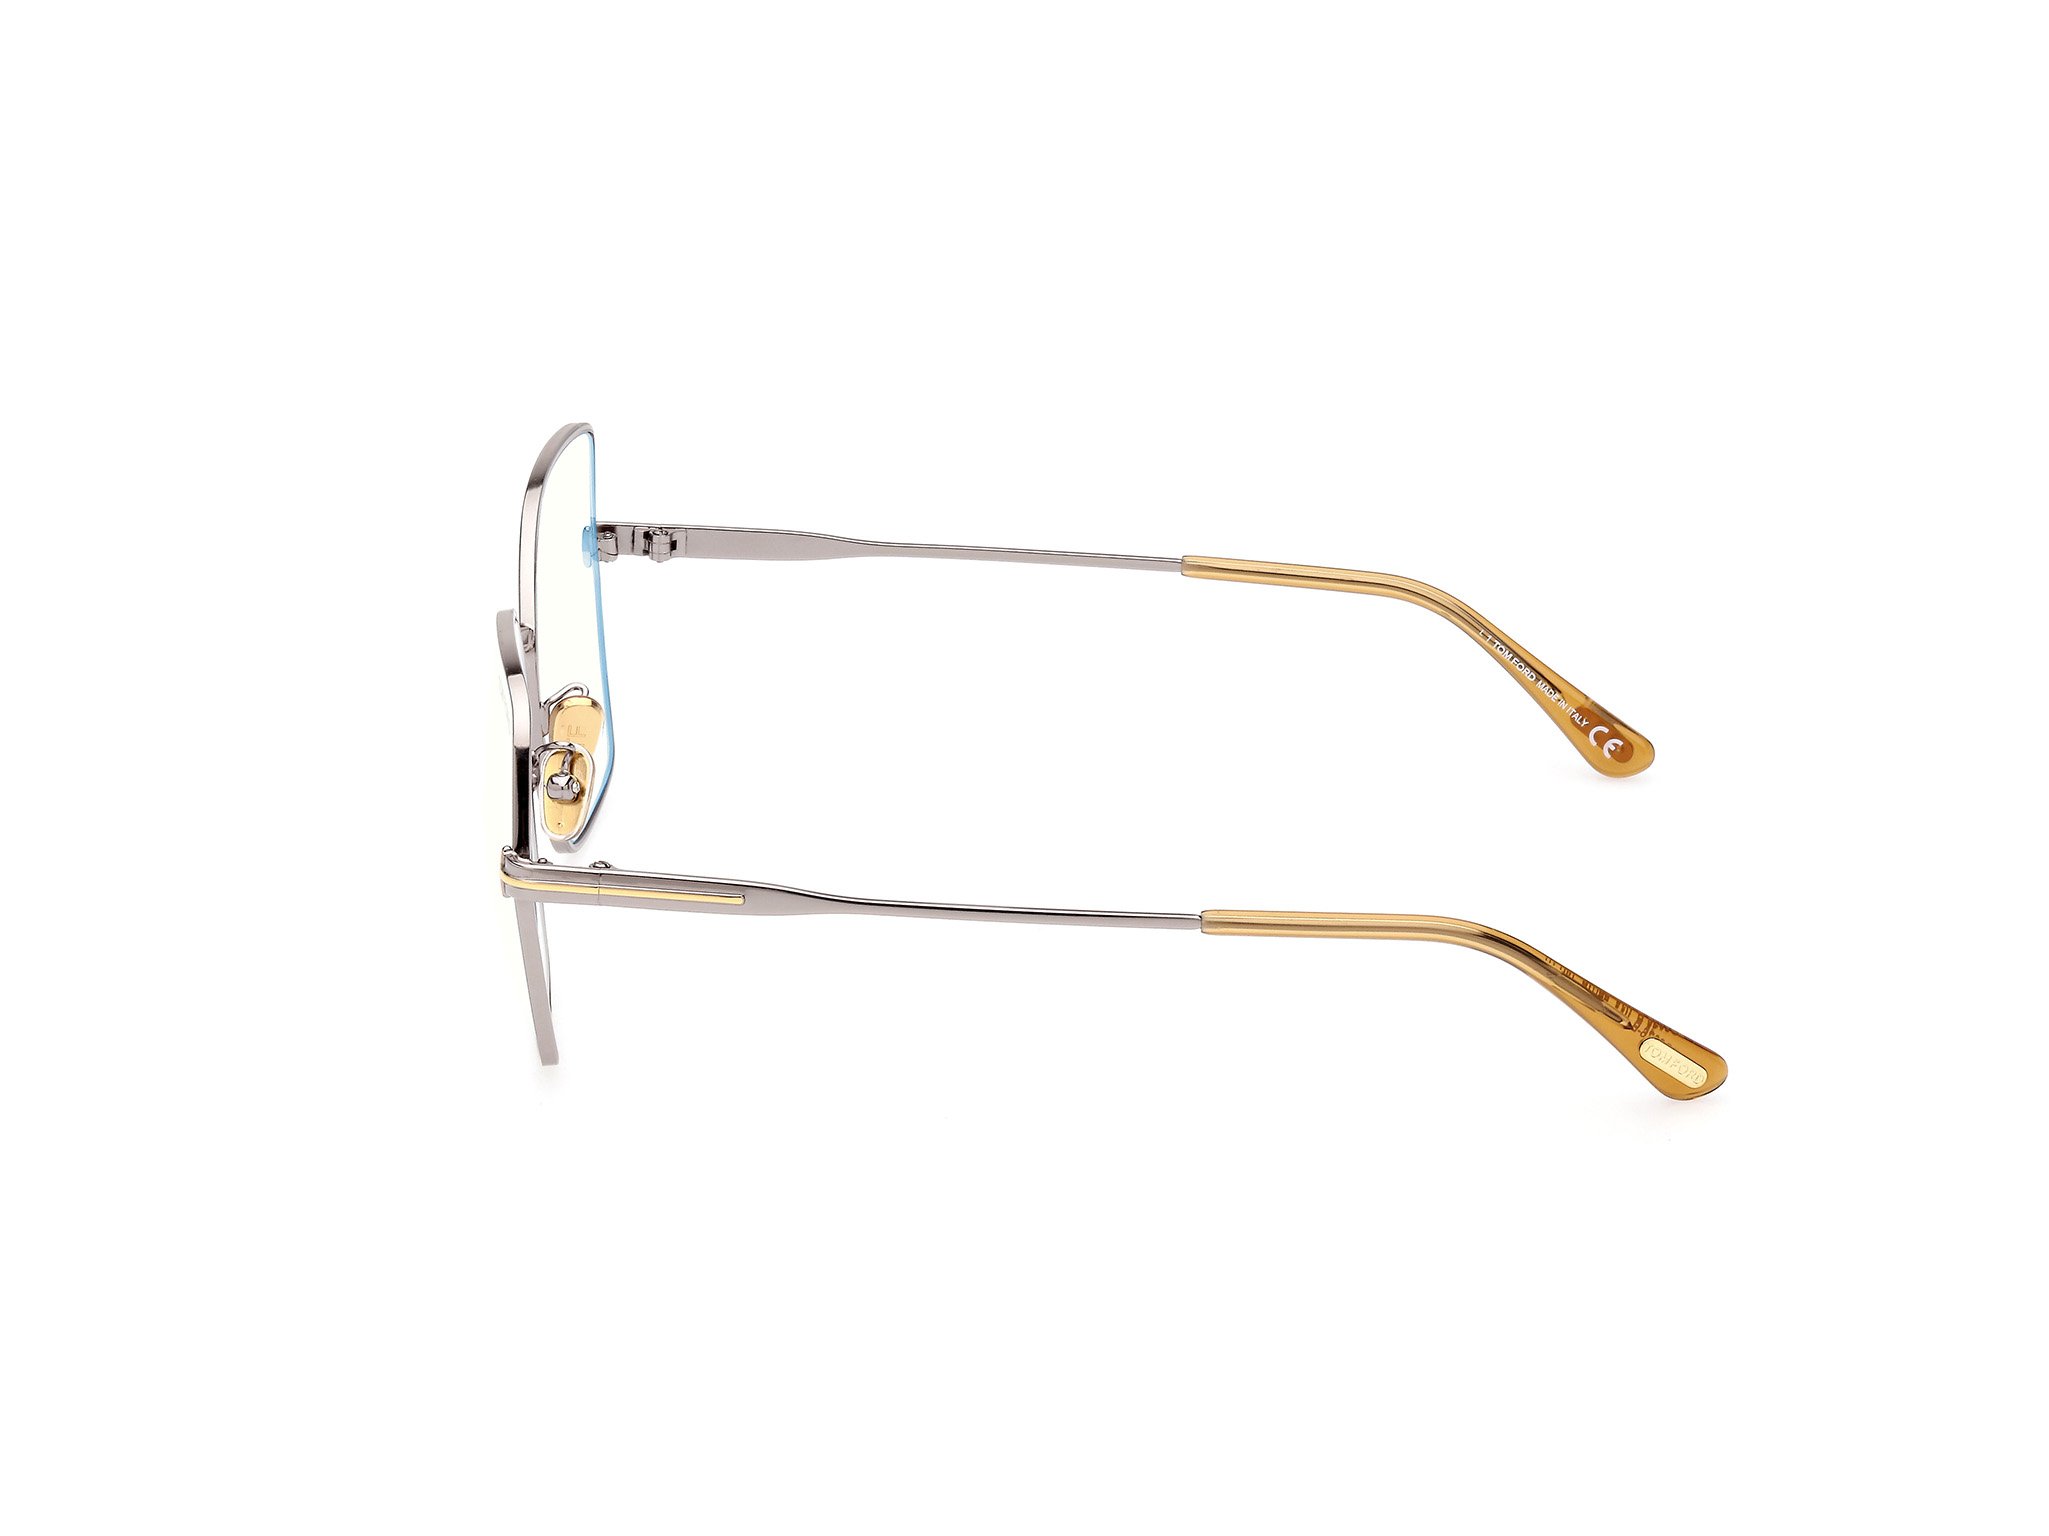 Das Bild zeigt die Korrektionsbrille FT5876-B 014 von der Marke Tom Ford in silber.